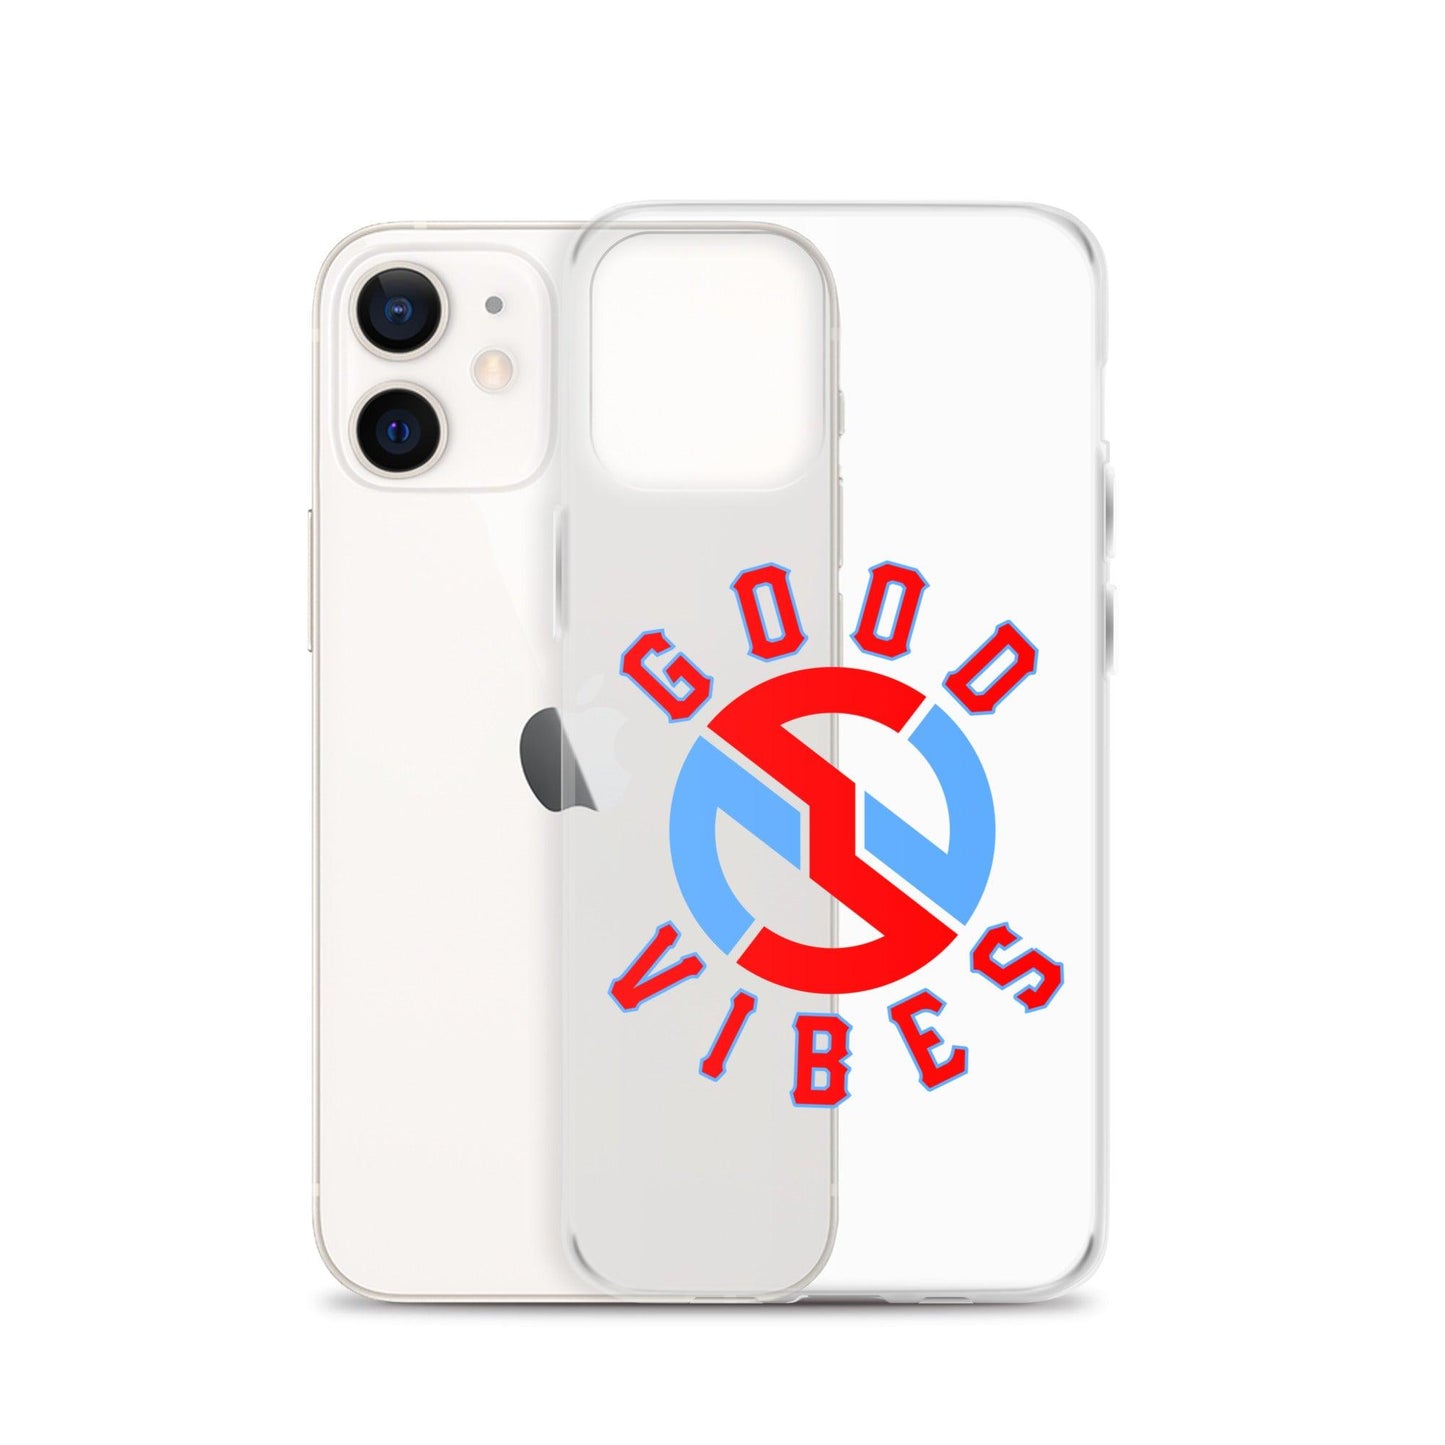 Nick Swiney “Essential” iPhone Case - Fan Arch